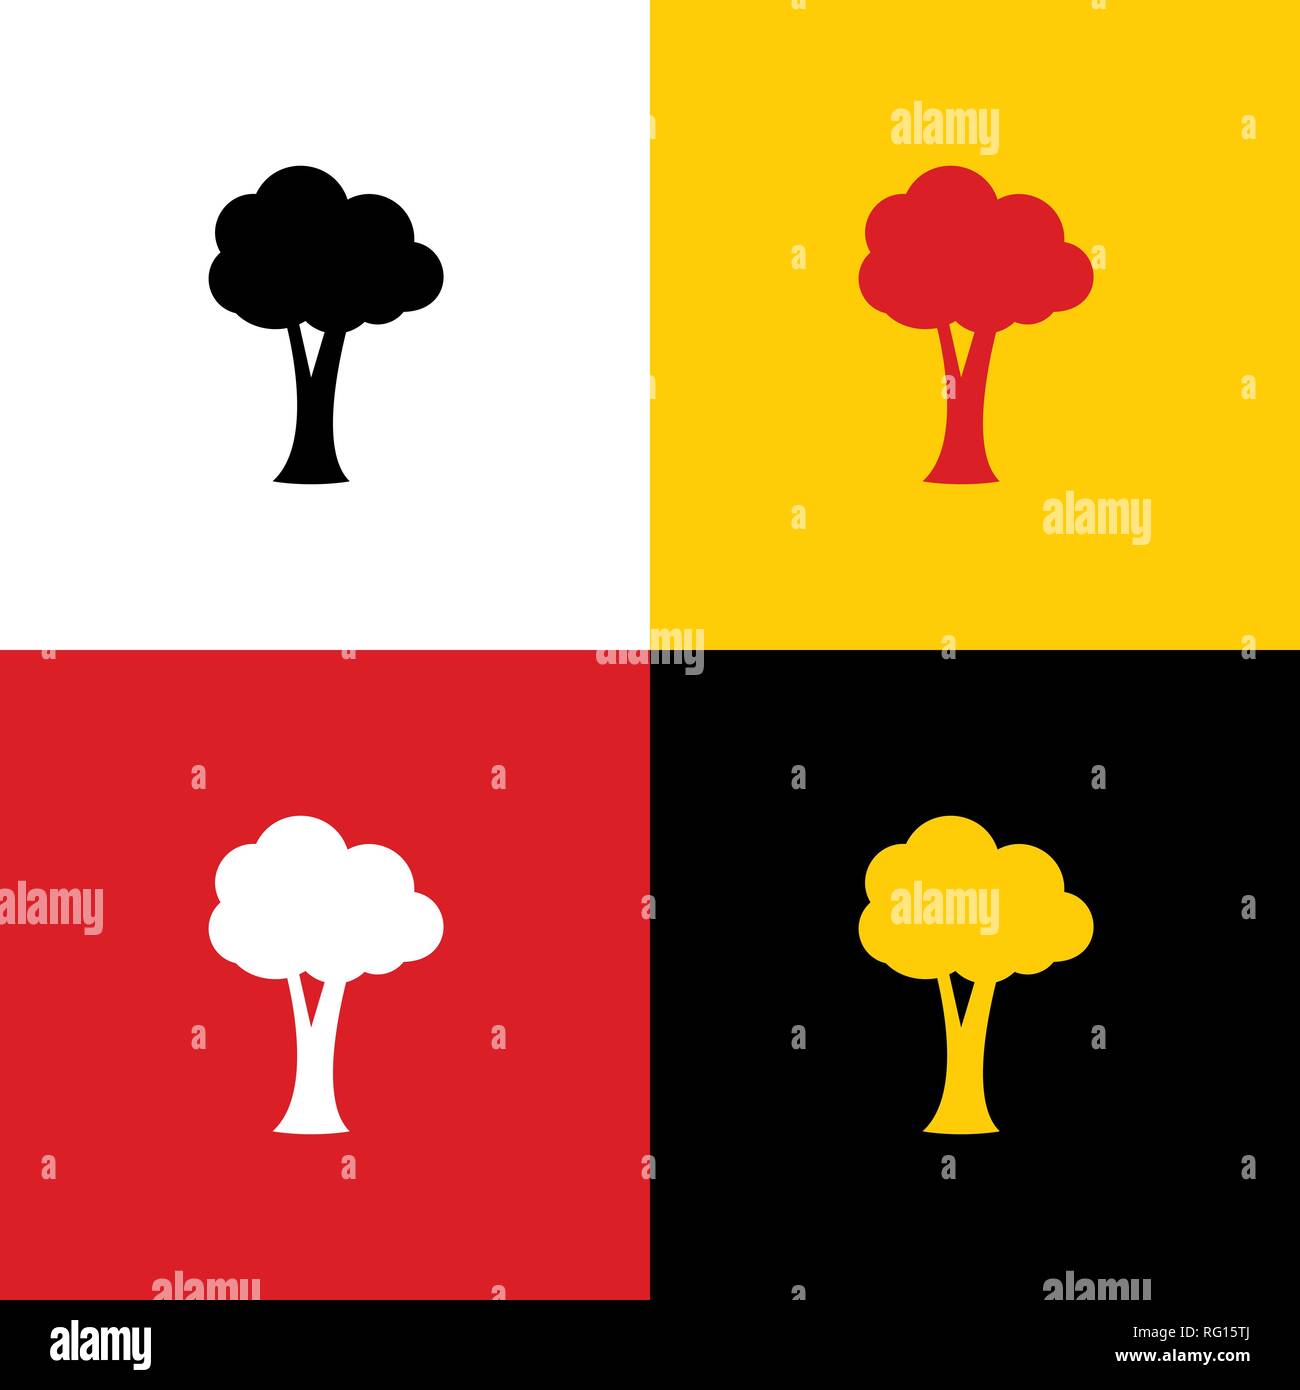 Baum zeichen Abbildung. Vektor. Symbole der deutschen Flagge auf entsprechenden Farben als Hintergrund. Stock Vektor